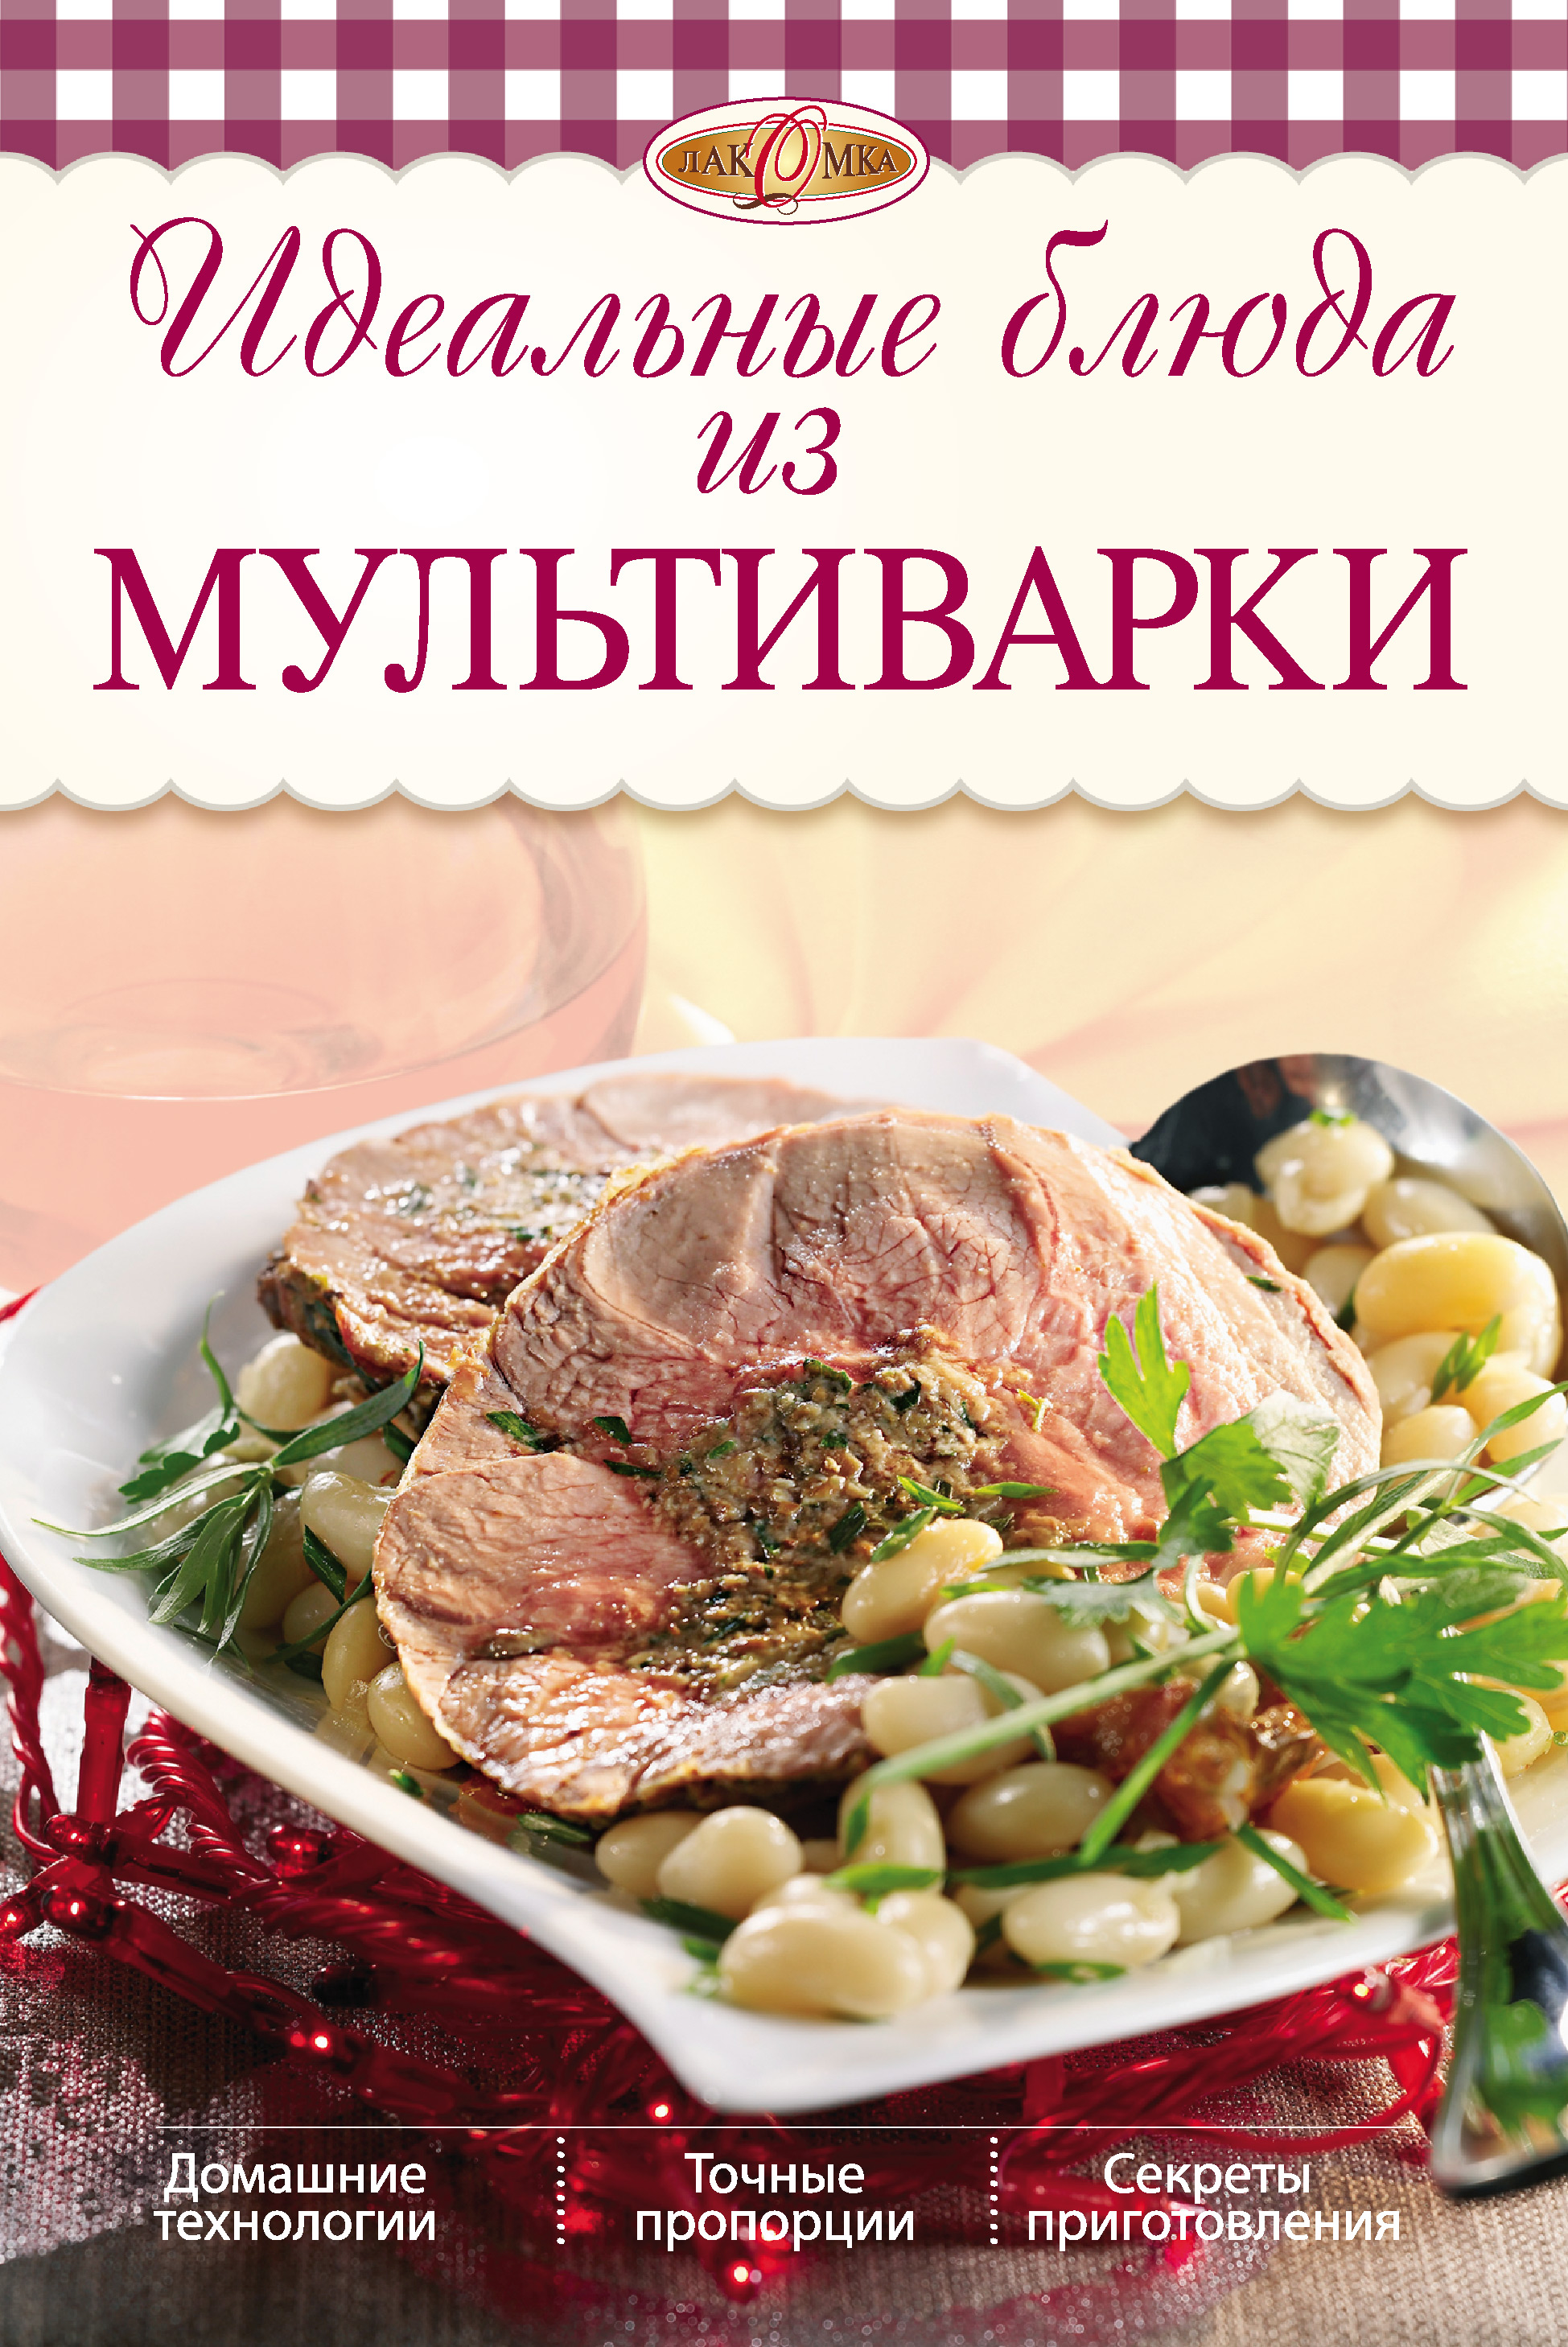 Книга Идеальные блюда из мультиварки из серии , созданная Ирина Михайлова, может относится к жанру Кулинария. Стоимость электронной книги Идеальные блюда из мультиварки с идентификатором 4886248 составляет 59.90 руб.